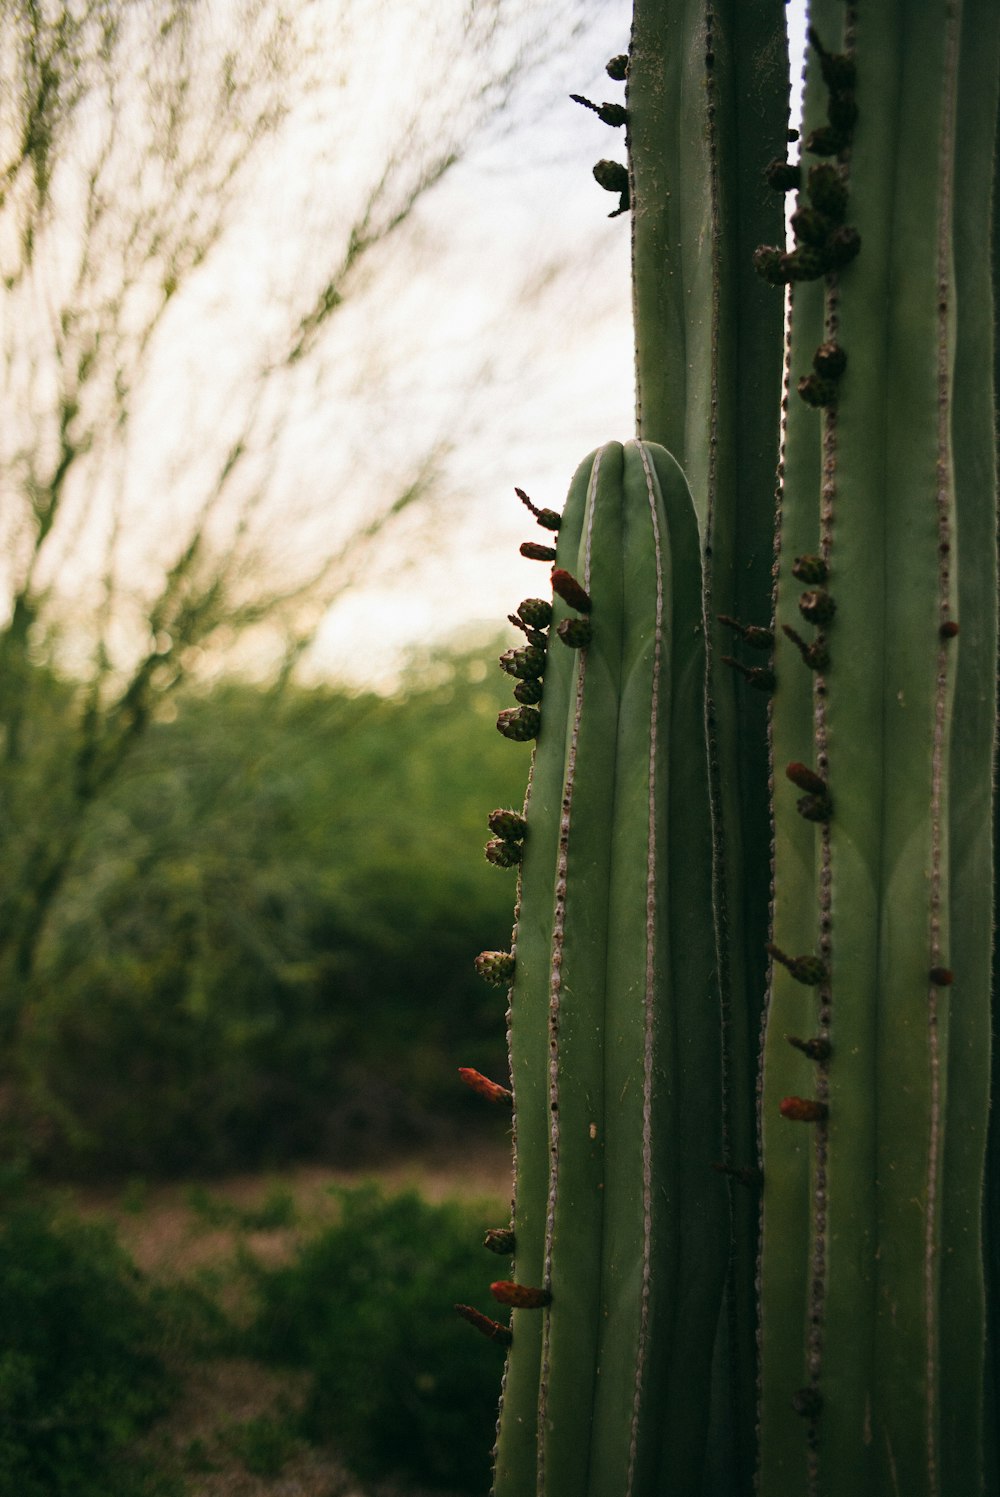 green cactus during daytime